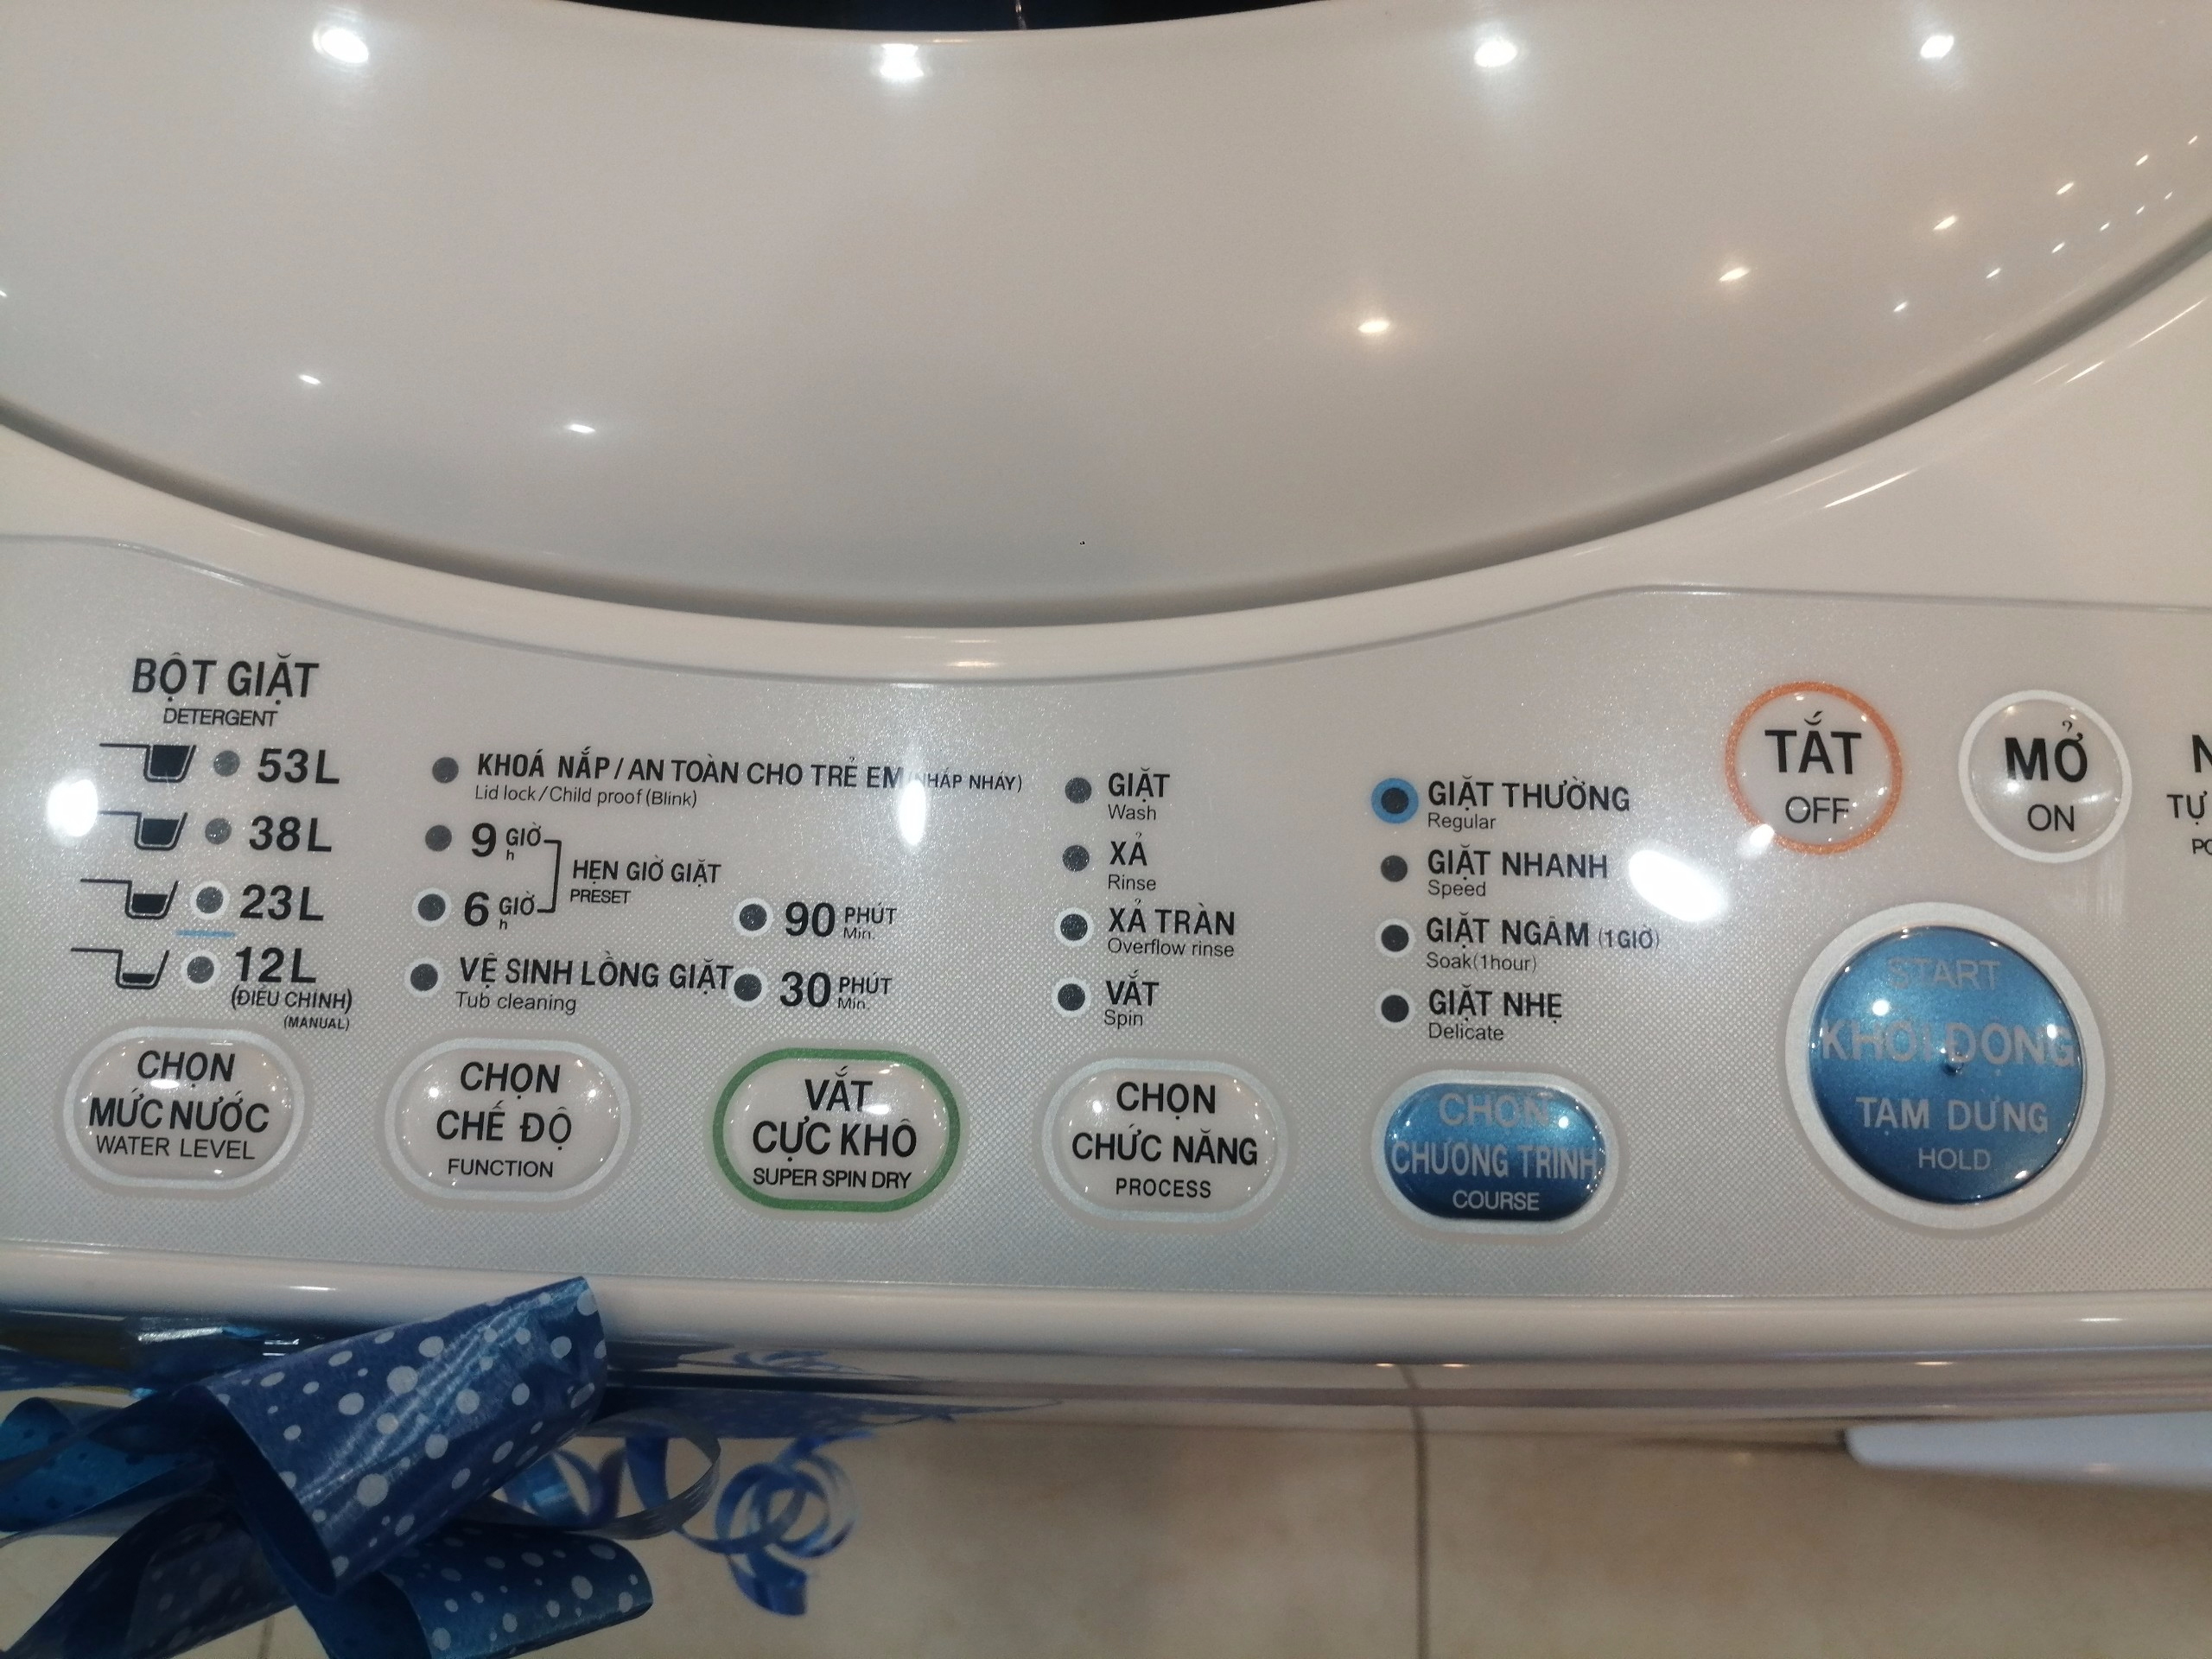 Hướng dẫn sử dụng máy giặt Toshiba từ A-Z